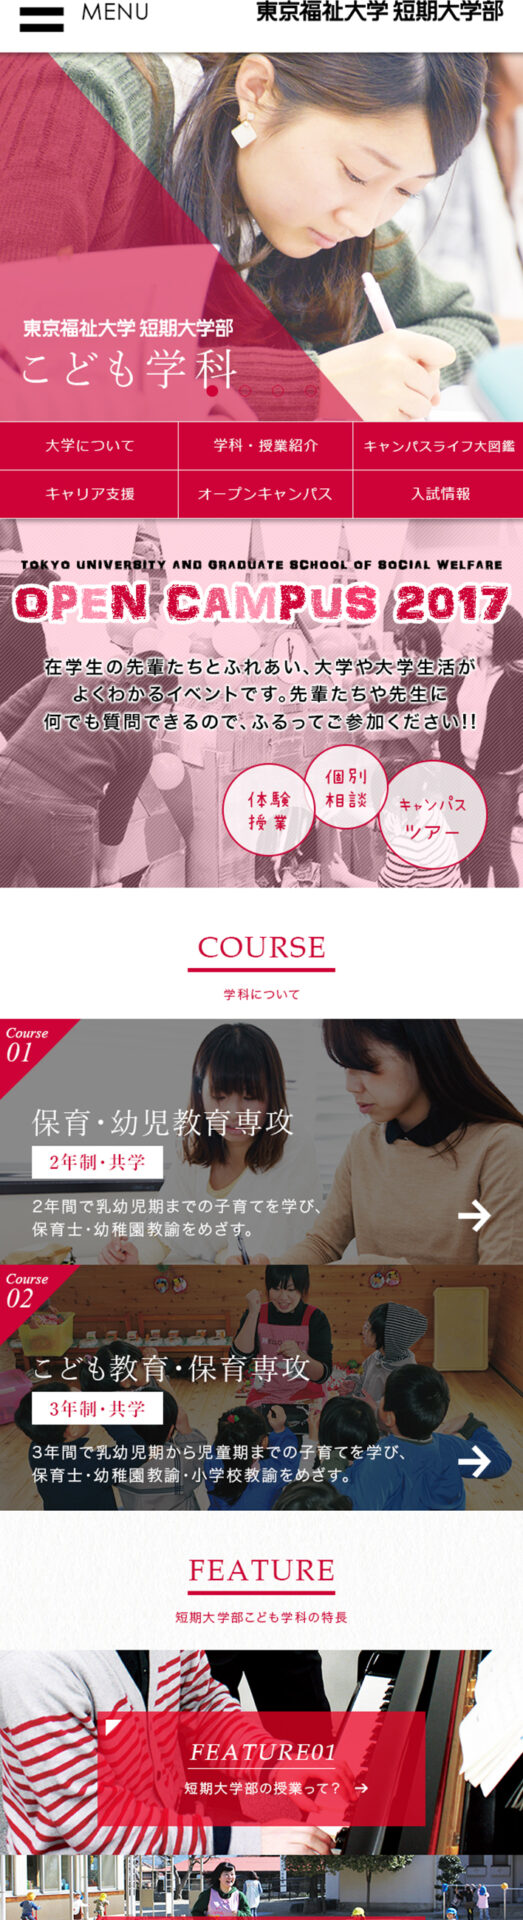 東京福祉大学 短期大学部こども学科 サイト ウェブ制作実績